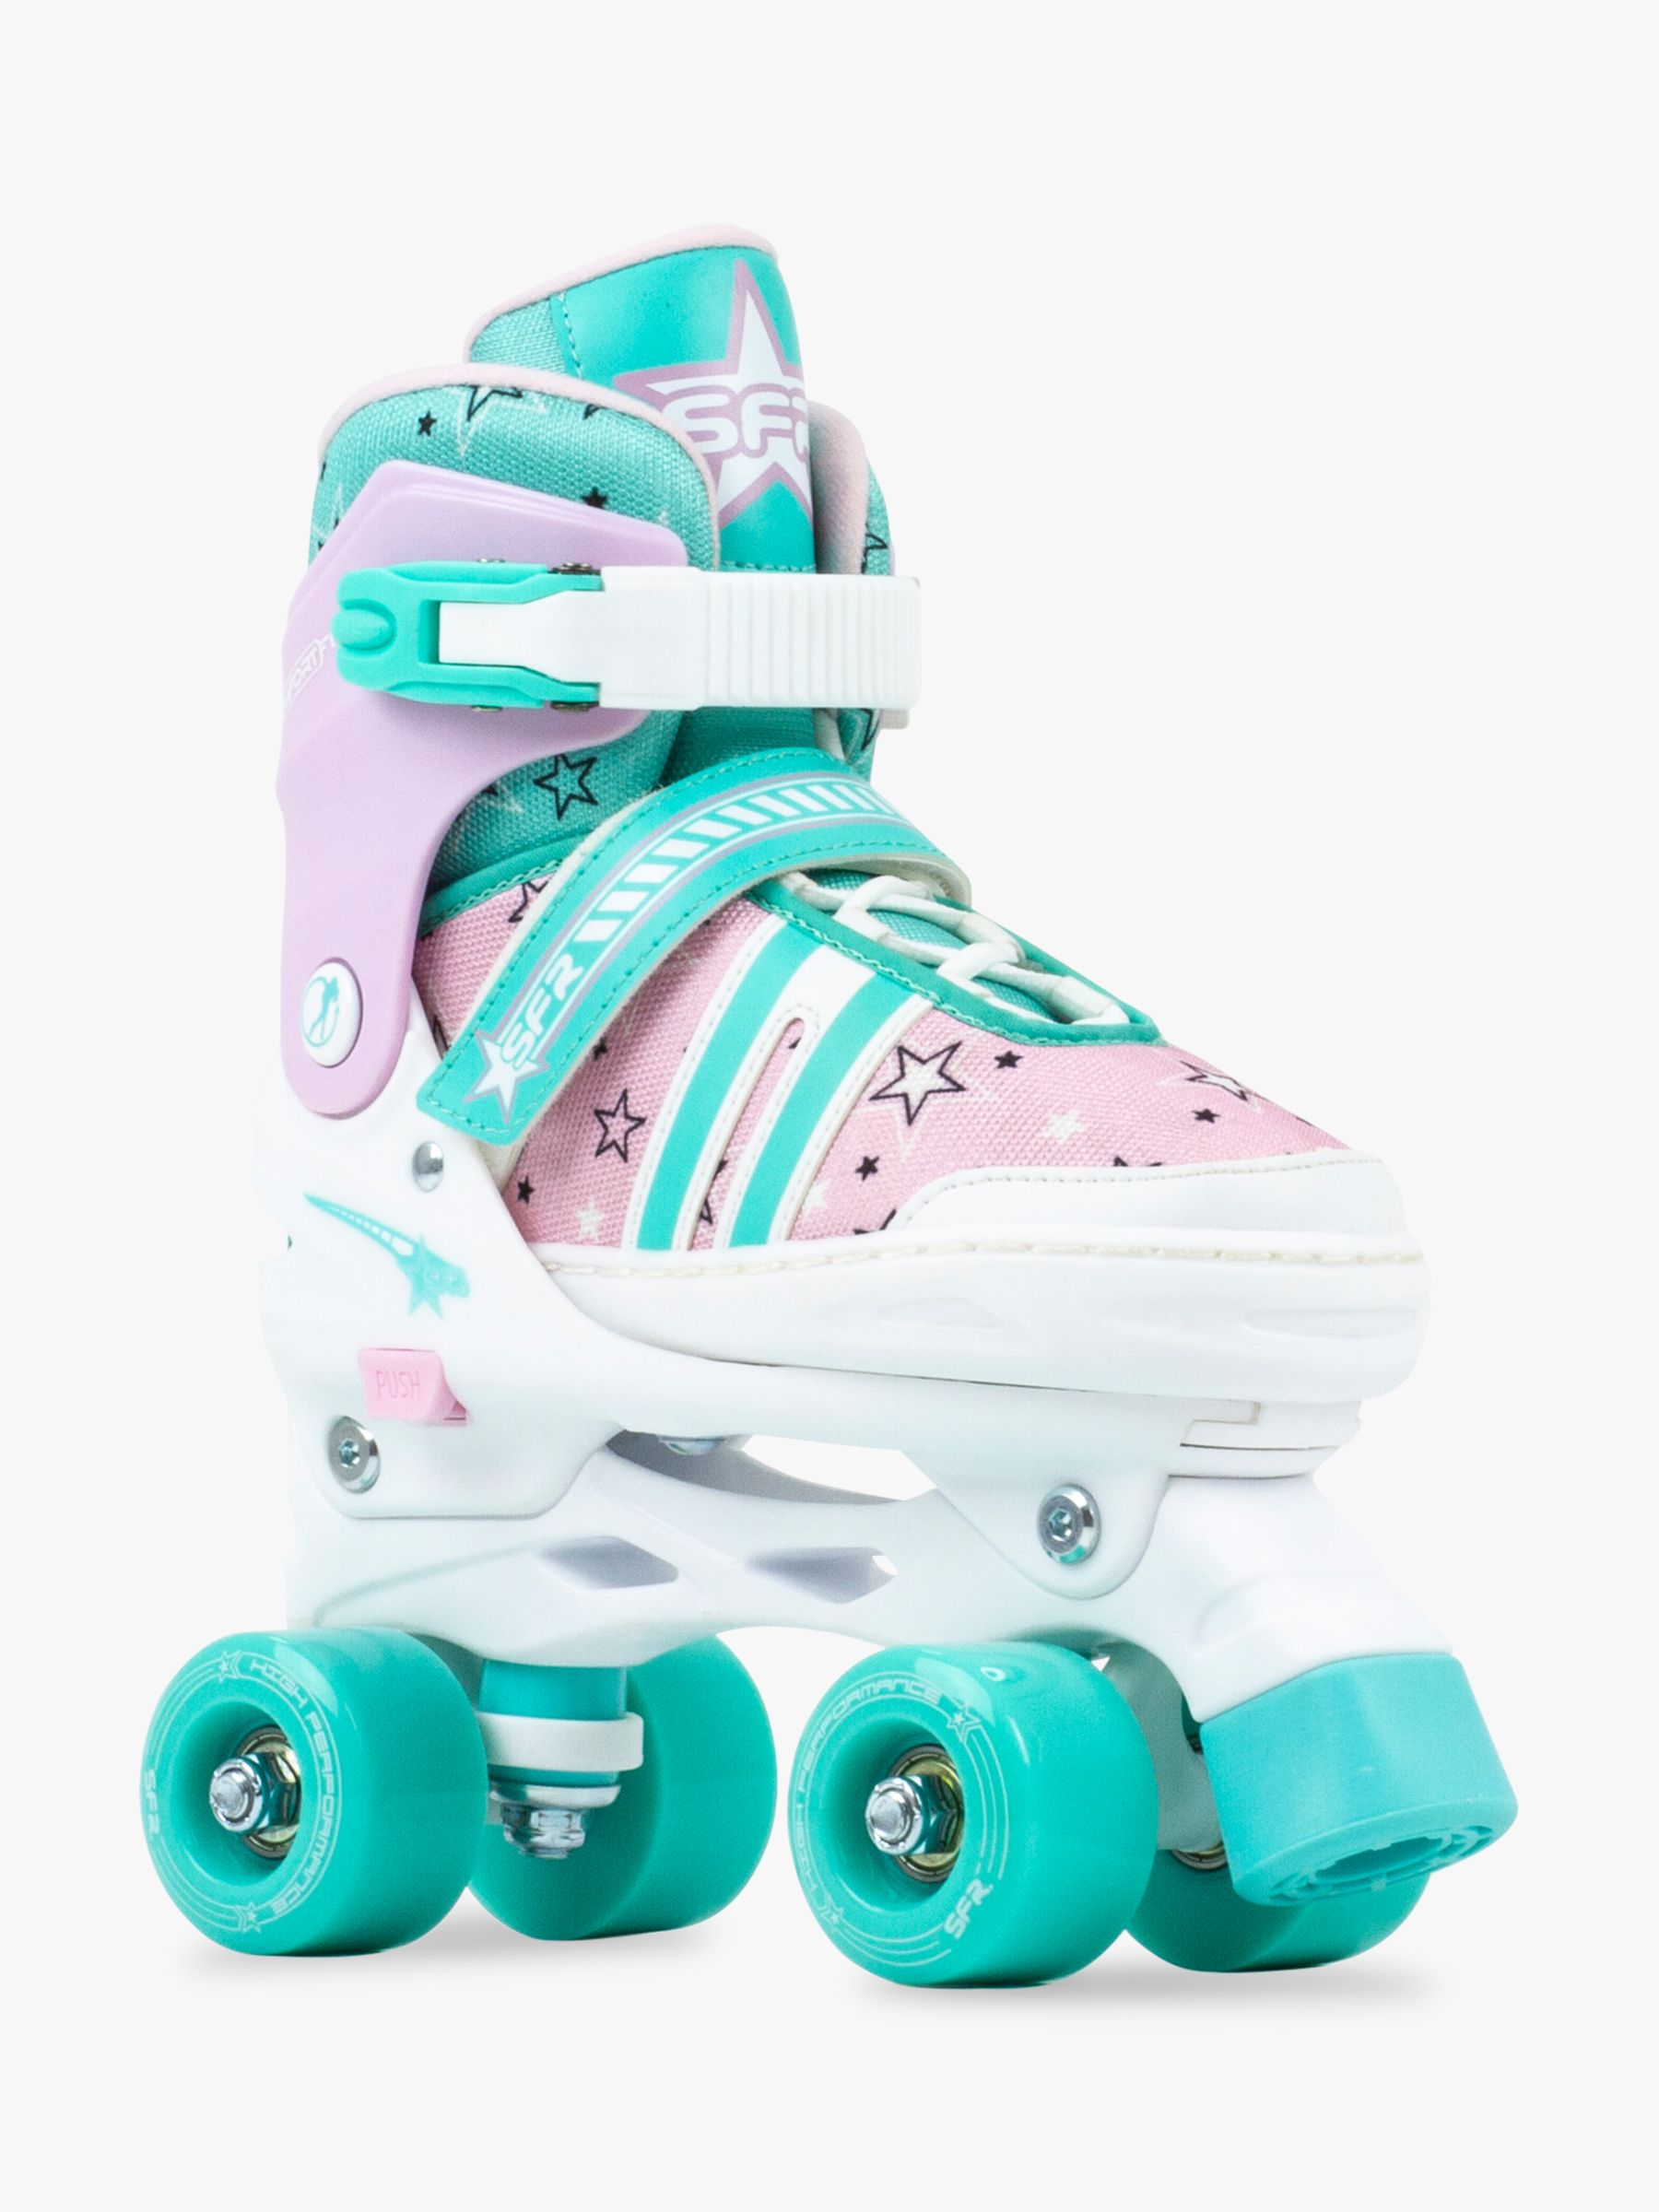 Stateside Spectra Roller Quad Skates, Pink